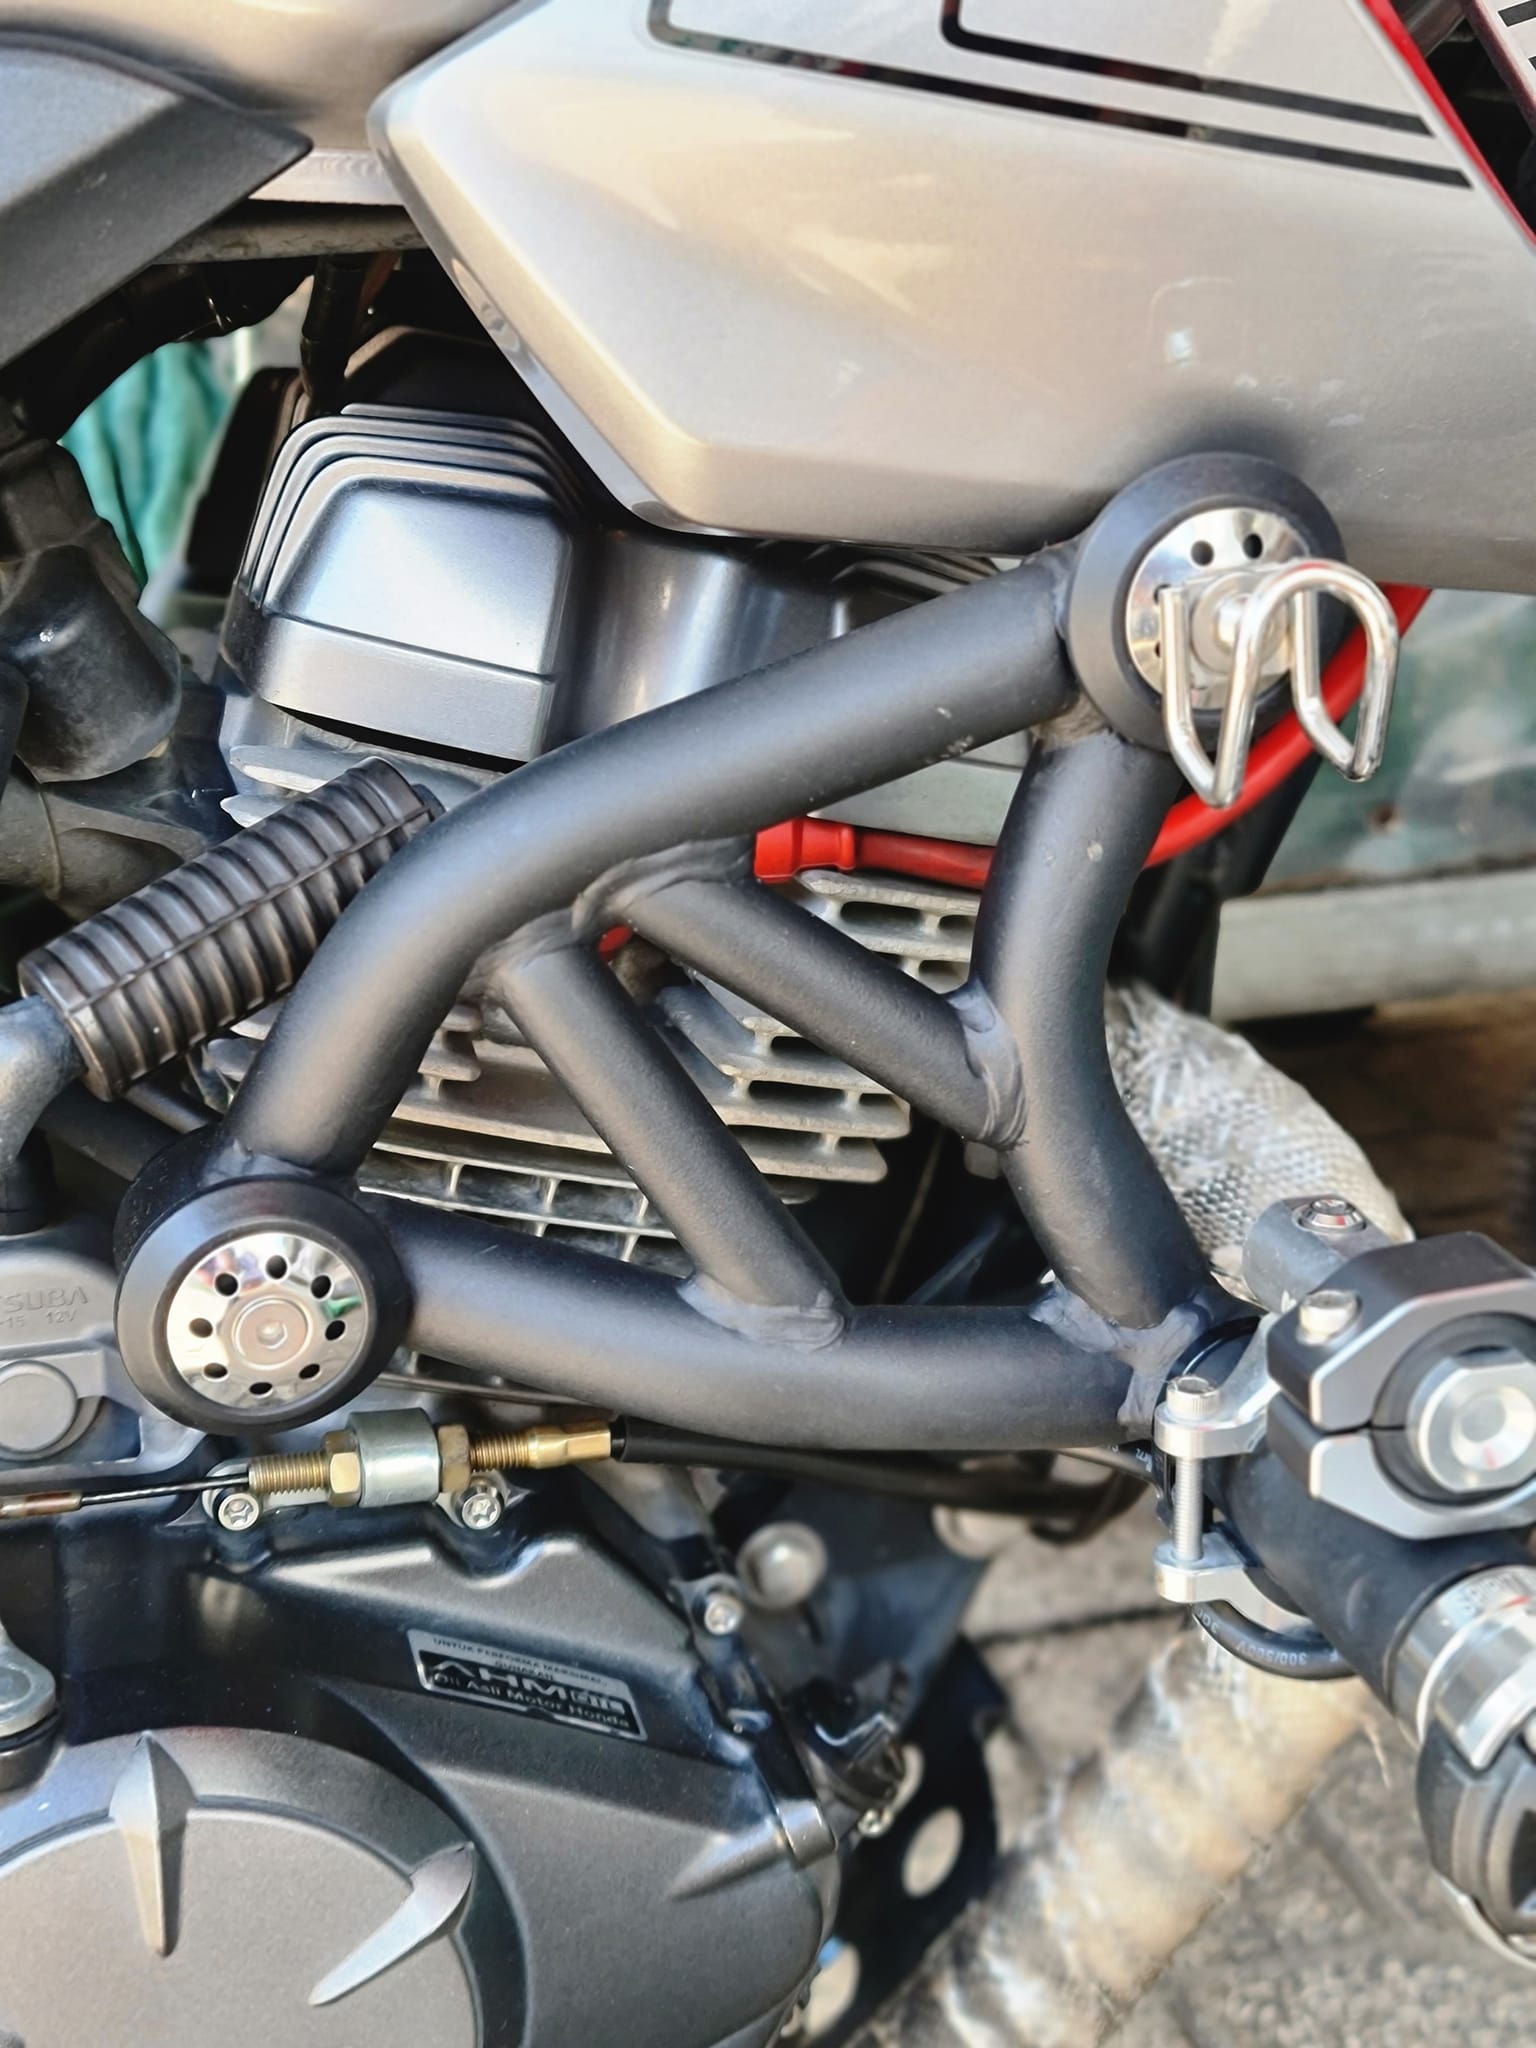 Honda CB150 Verza 2018 hoàn toàn mới lộ diện nâng cấp nhẹ